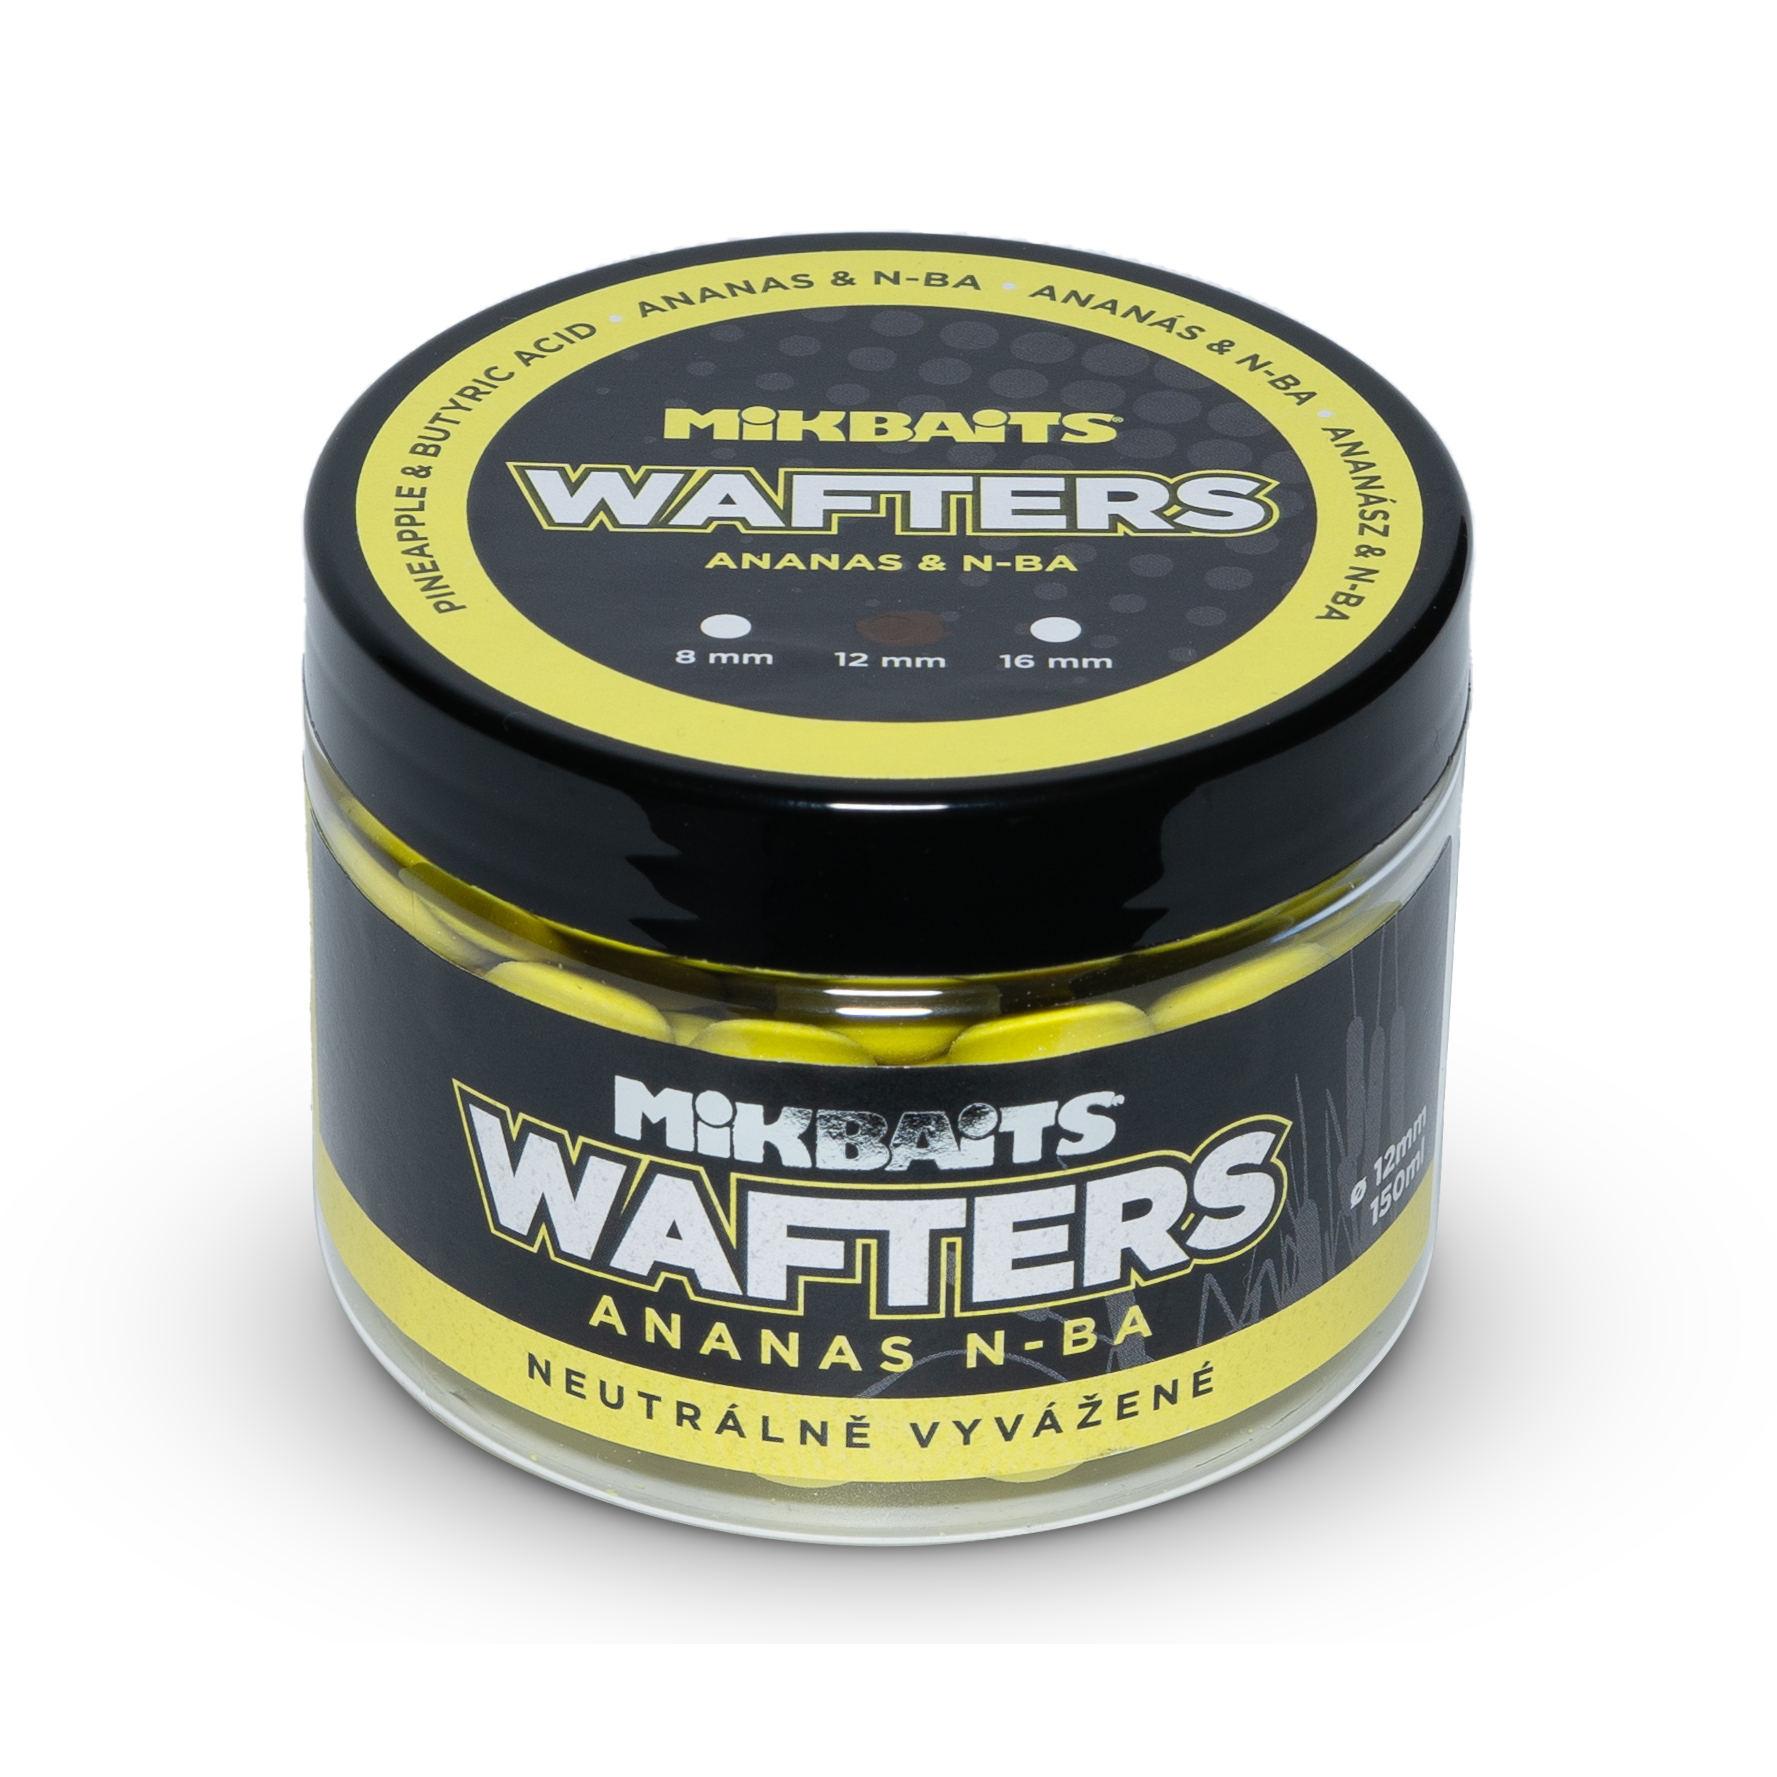 Wafters vyvážené nástrahy 150ml - Ananas N-BA 12mm